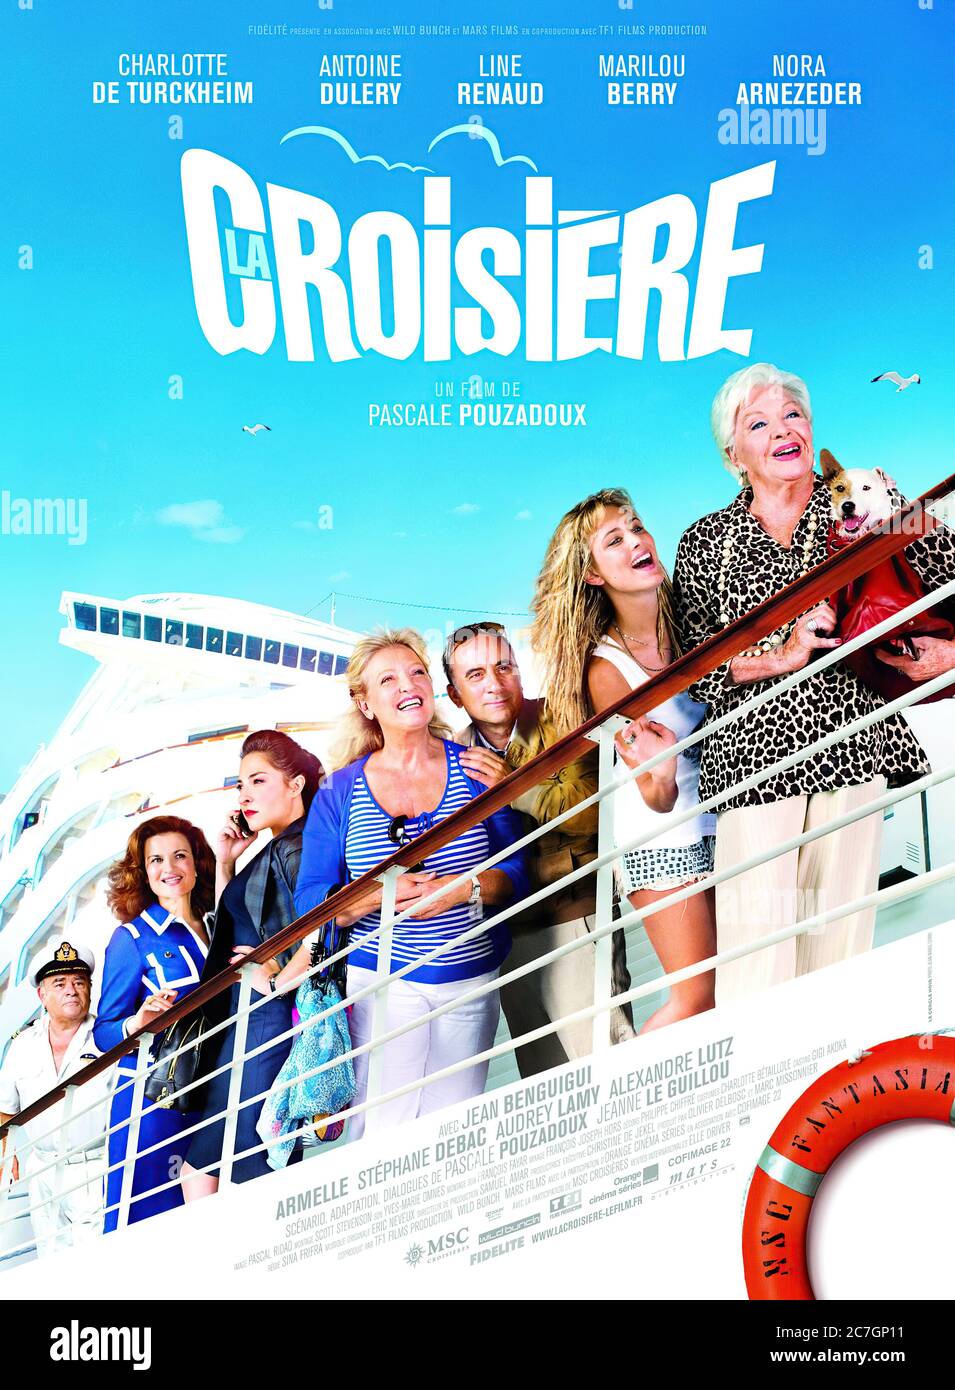 La Croisière - Movie Poster Stock Photo